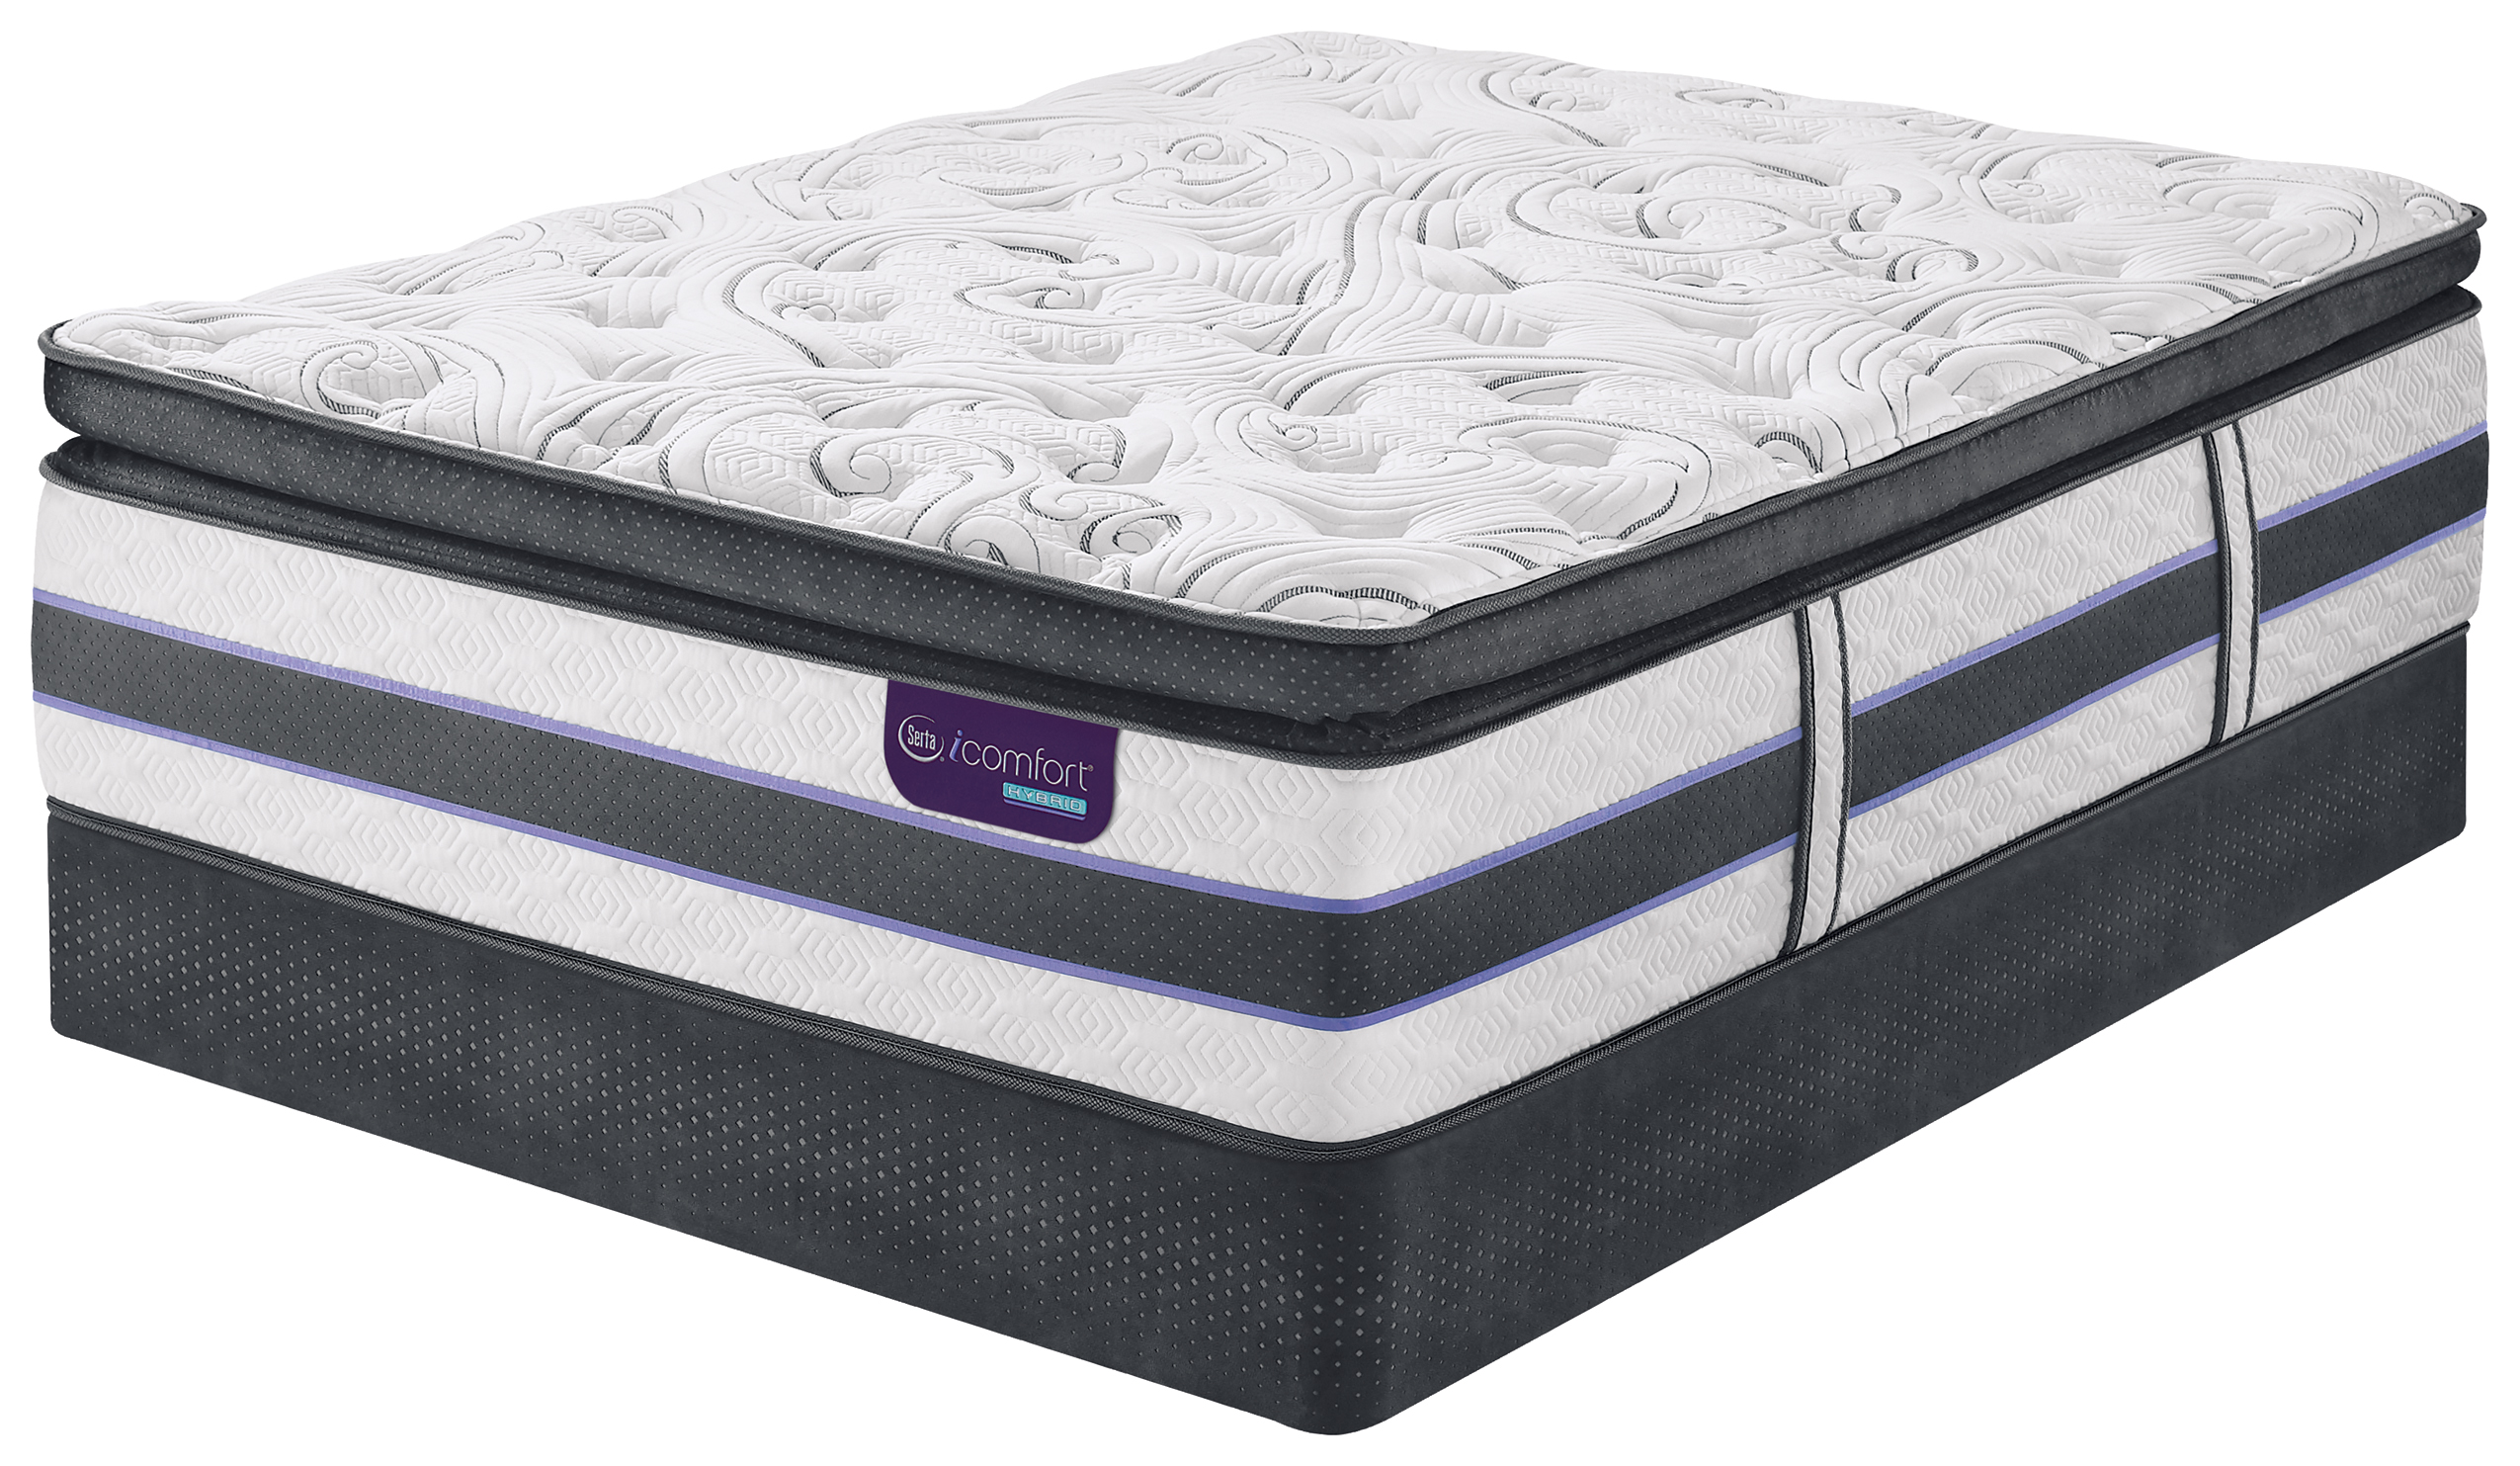 icomfort pillow top foam mattress